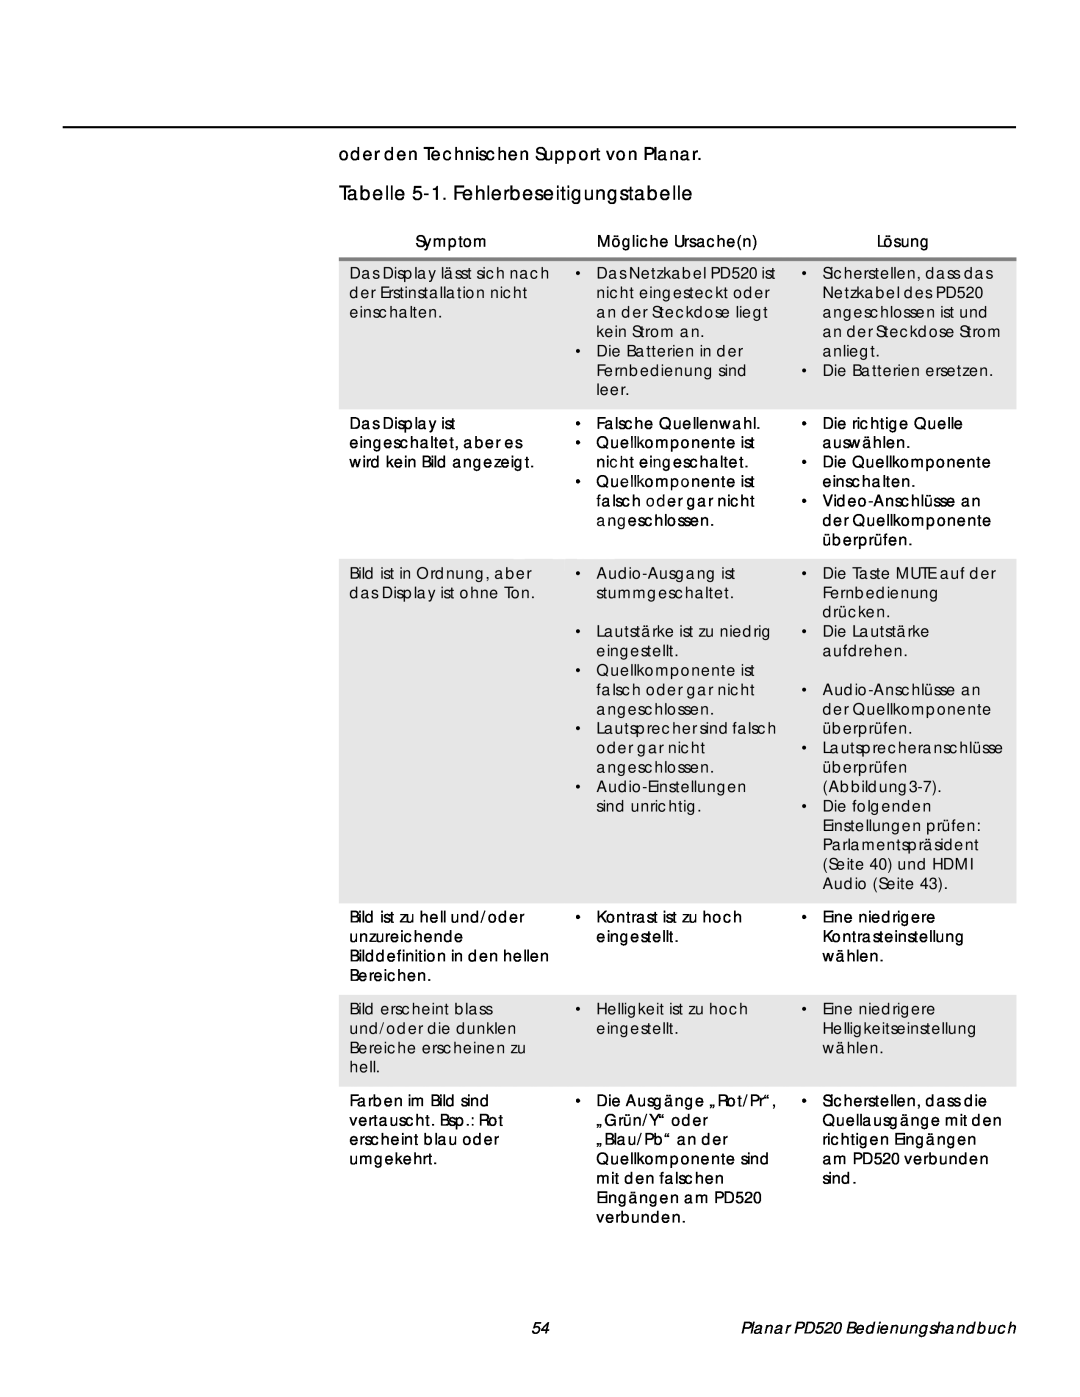 Planar PD520 Tabelle 5-1.Fehlerbeseitigungstabelle, oder den Technischen Support von Planar, Symptom, Mögliche Ursachen 